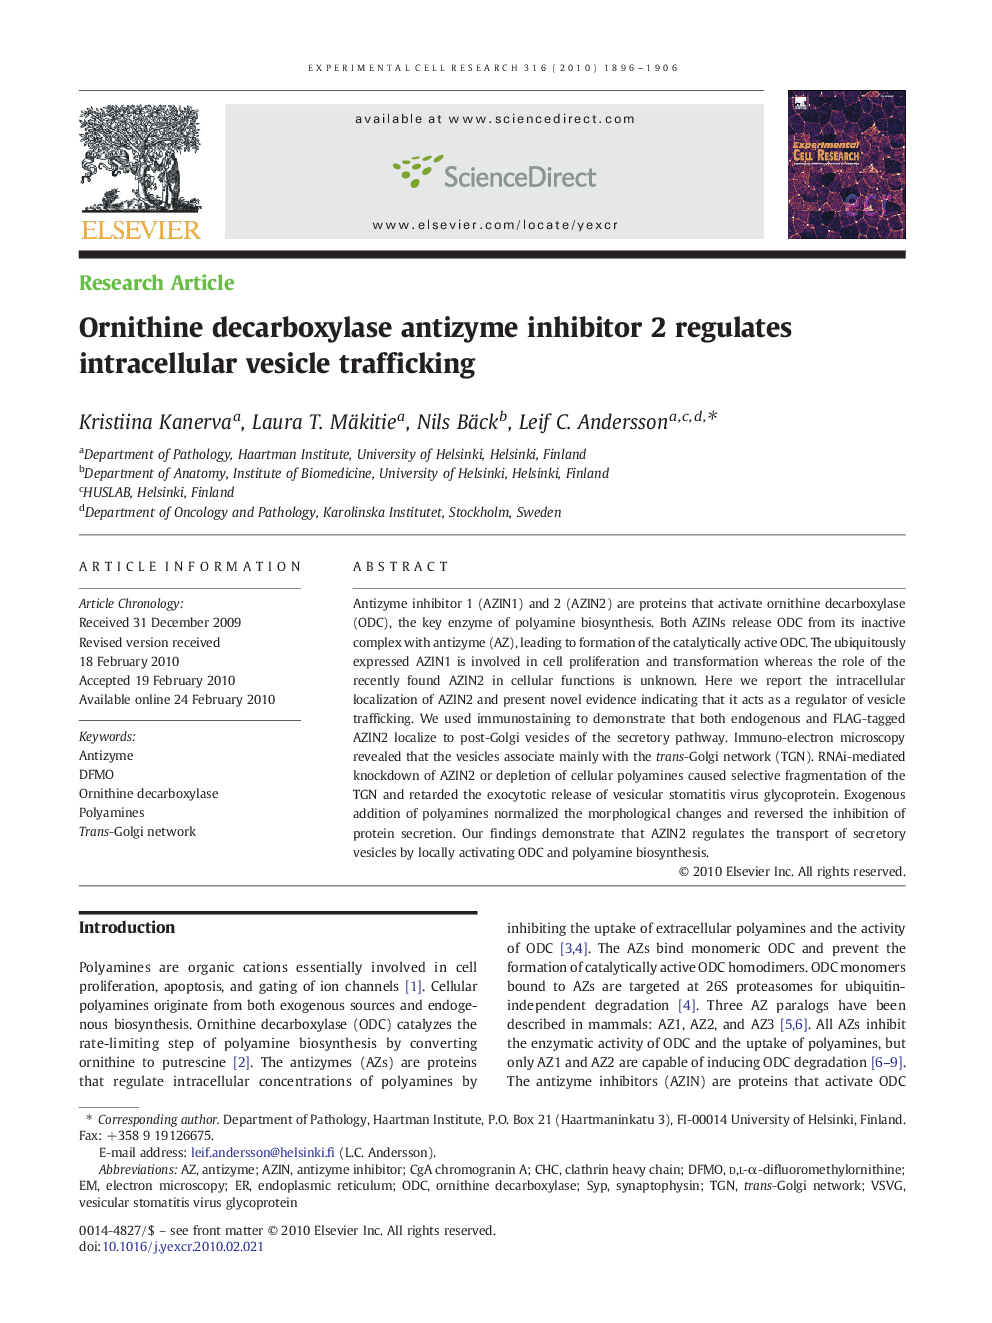 Ornithine decarboxylase antizyme inhibitor 2 regulates intracellular vesicle trafficking